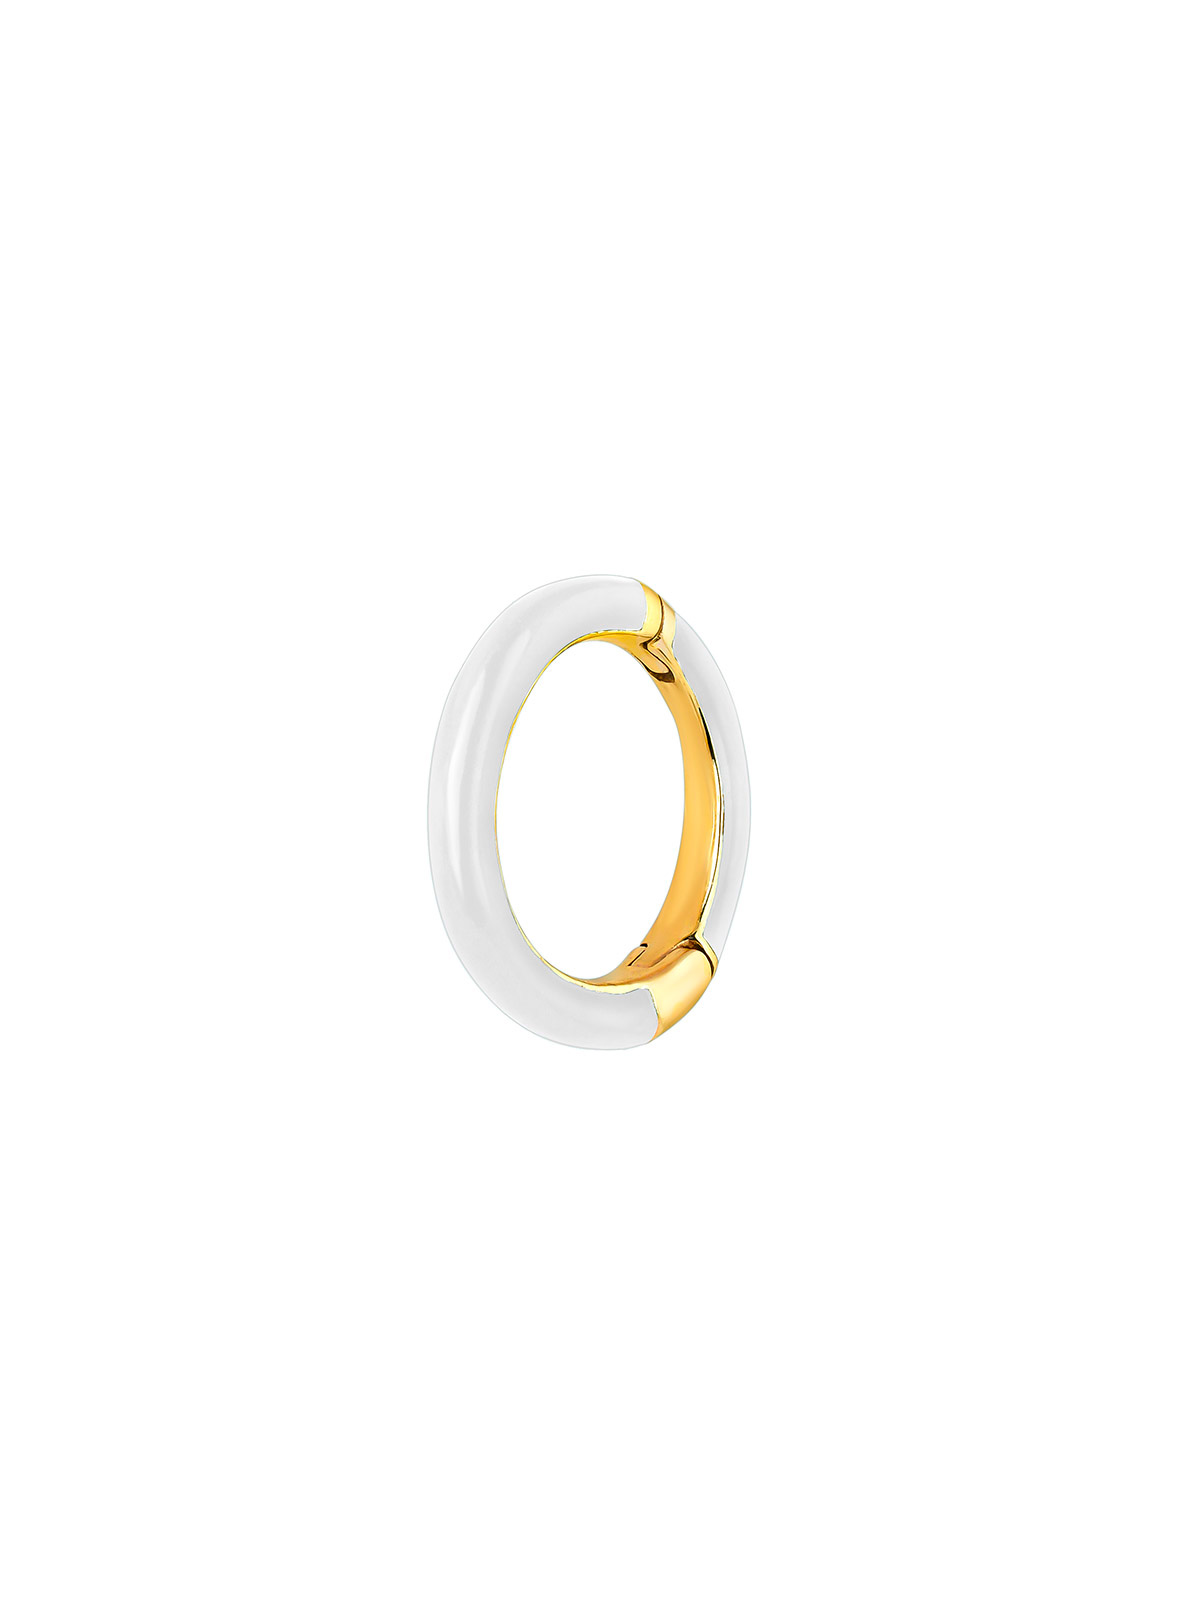 Boucle d'oreille individuelle en petit anneau d'or jaune 9K avec émail blanc